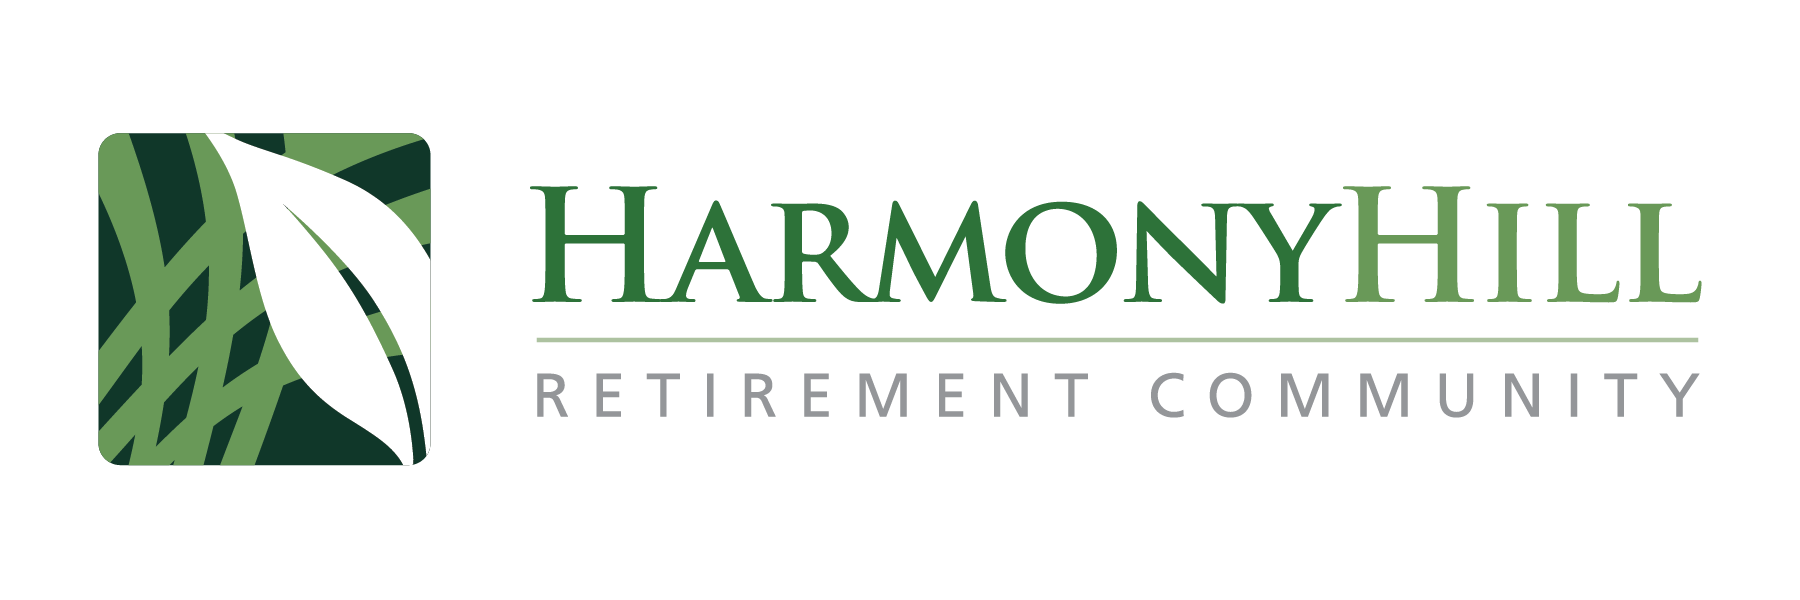 Harmony Hill logo